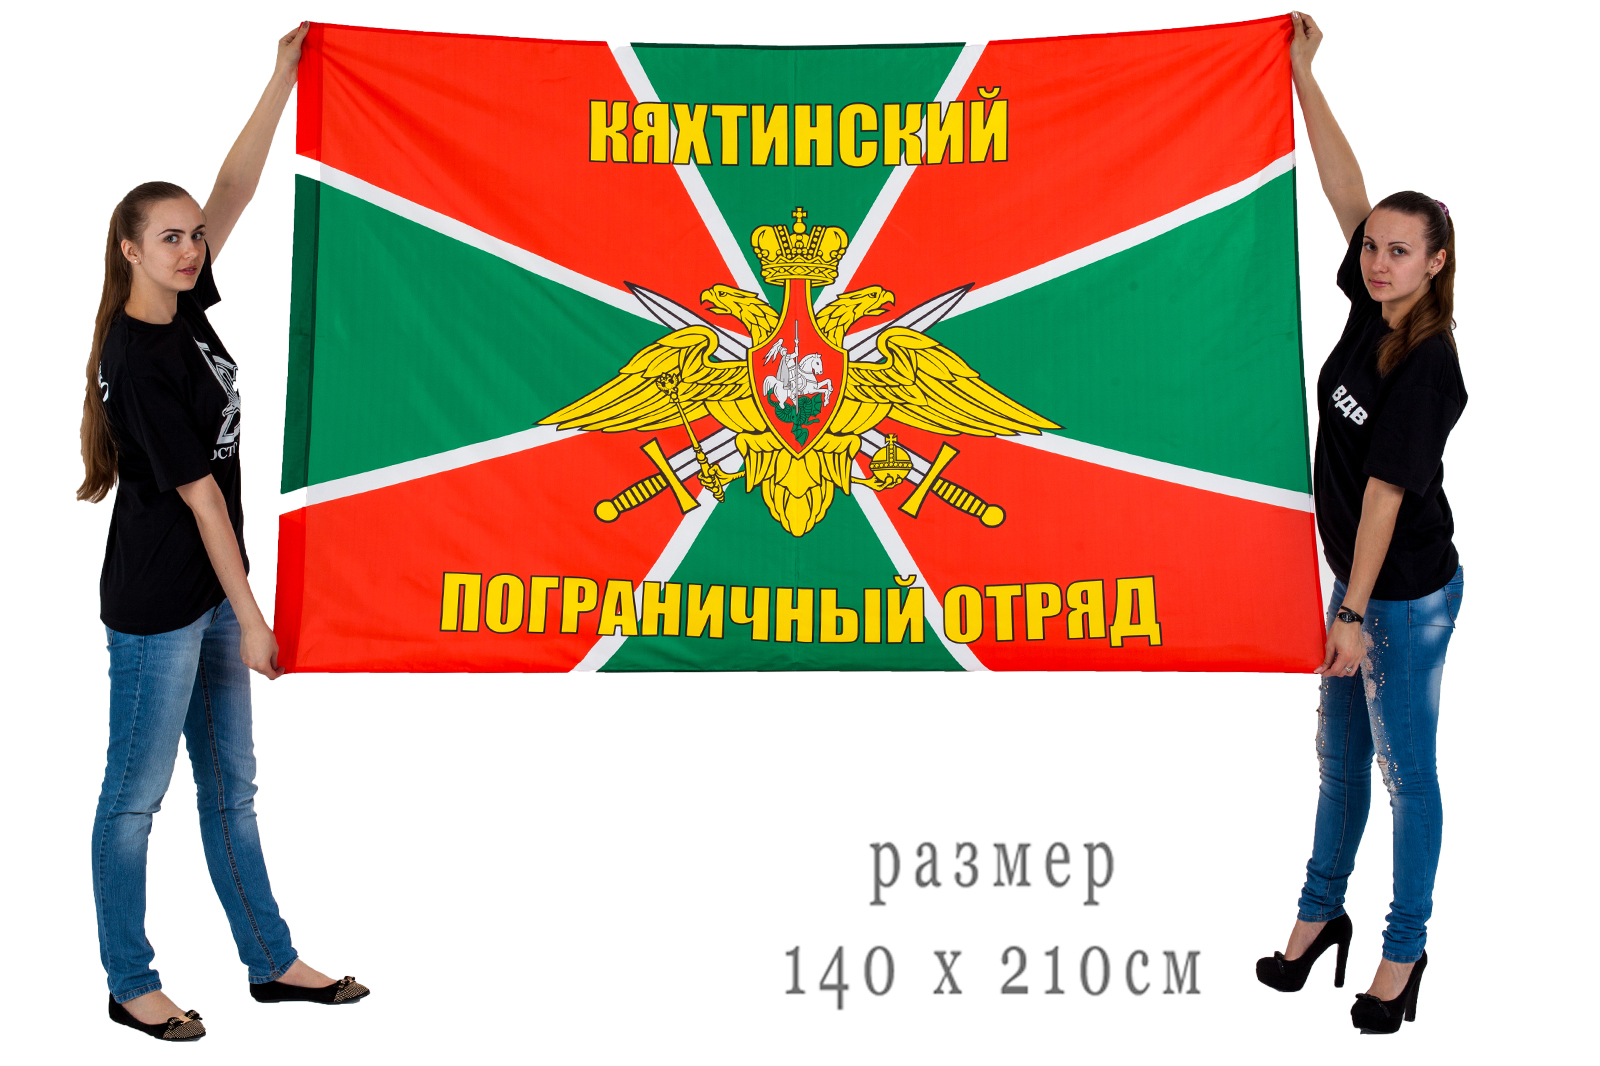 Большой флаг Кяхтинского погранотряда